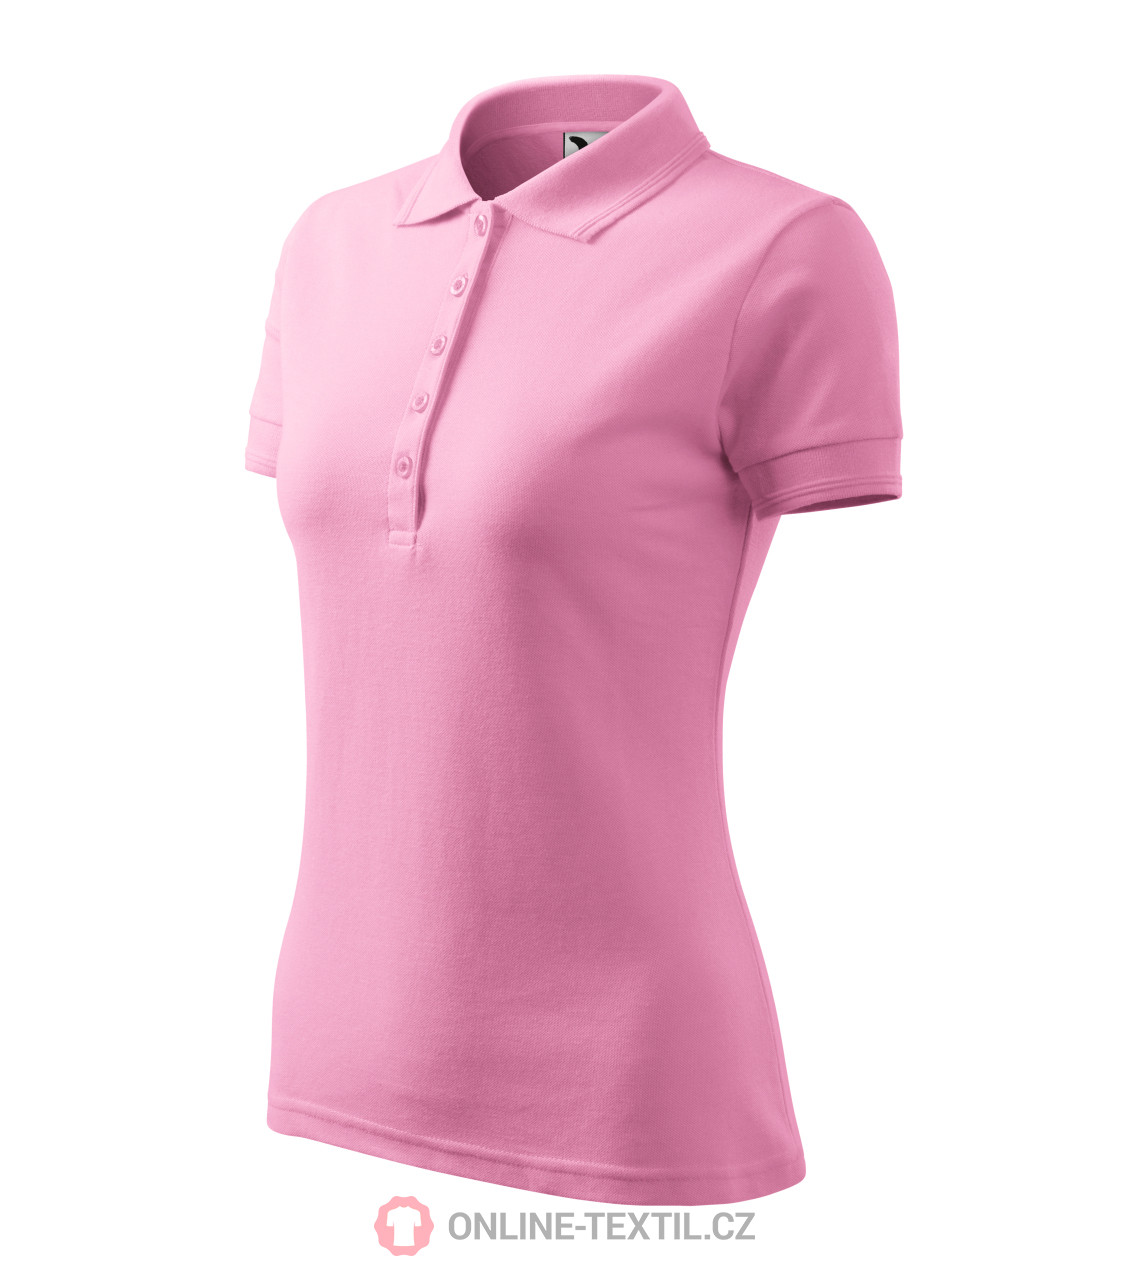 Polo Shirts Pink Sale Online, 60% OFF | jsazlaw.com